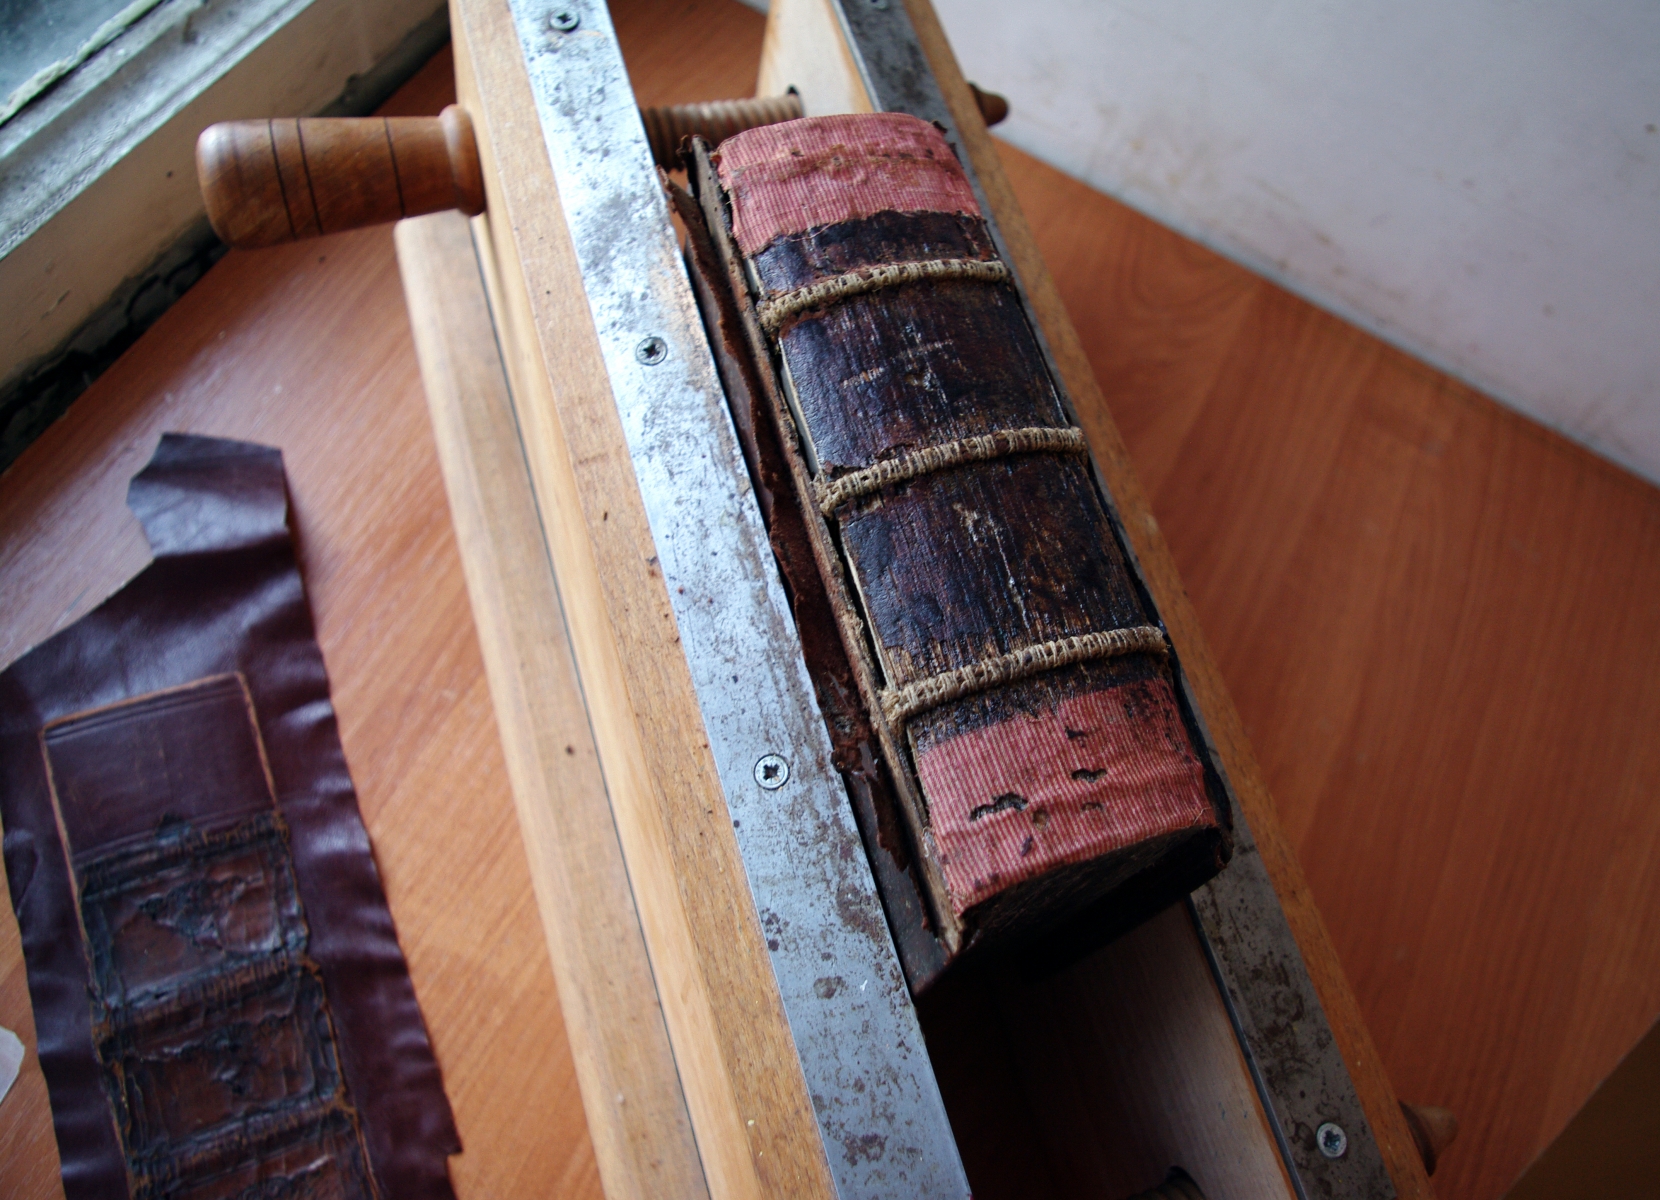 Псалтирь 19 века во время реставрации. Общий вид корешка со шнурами.